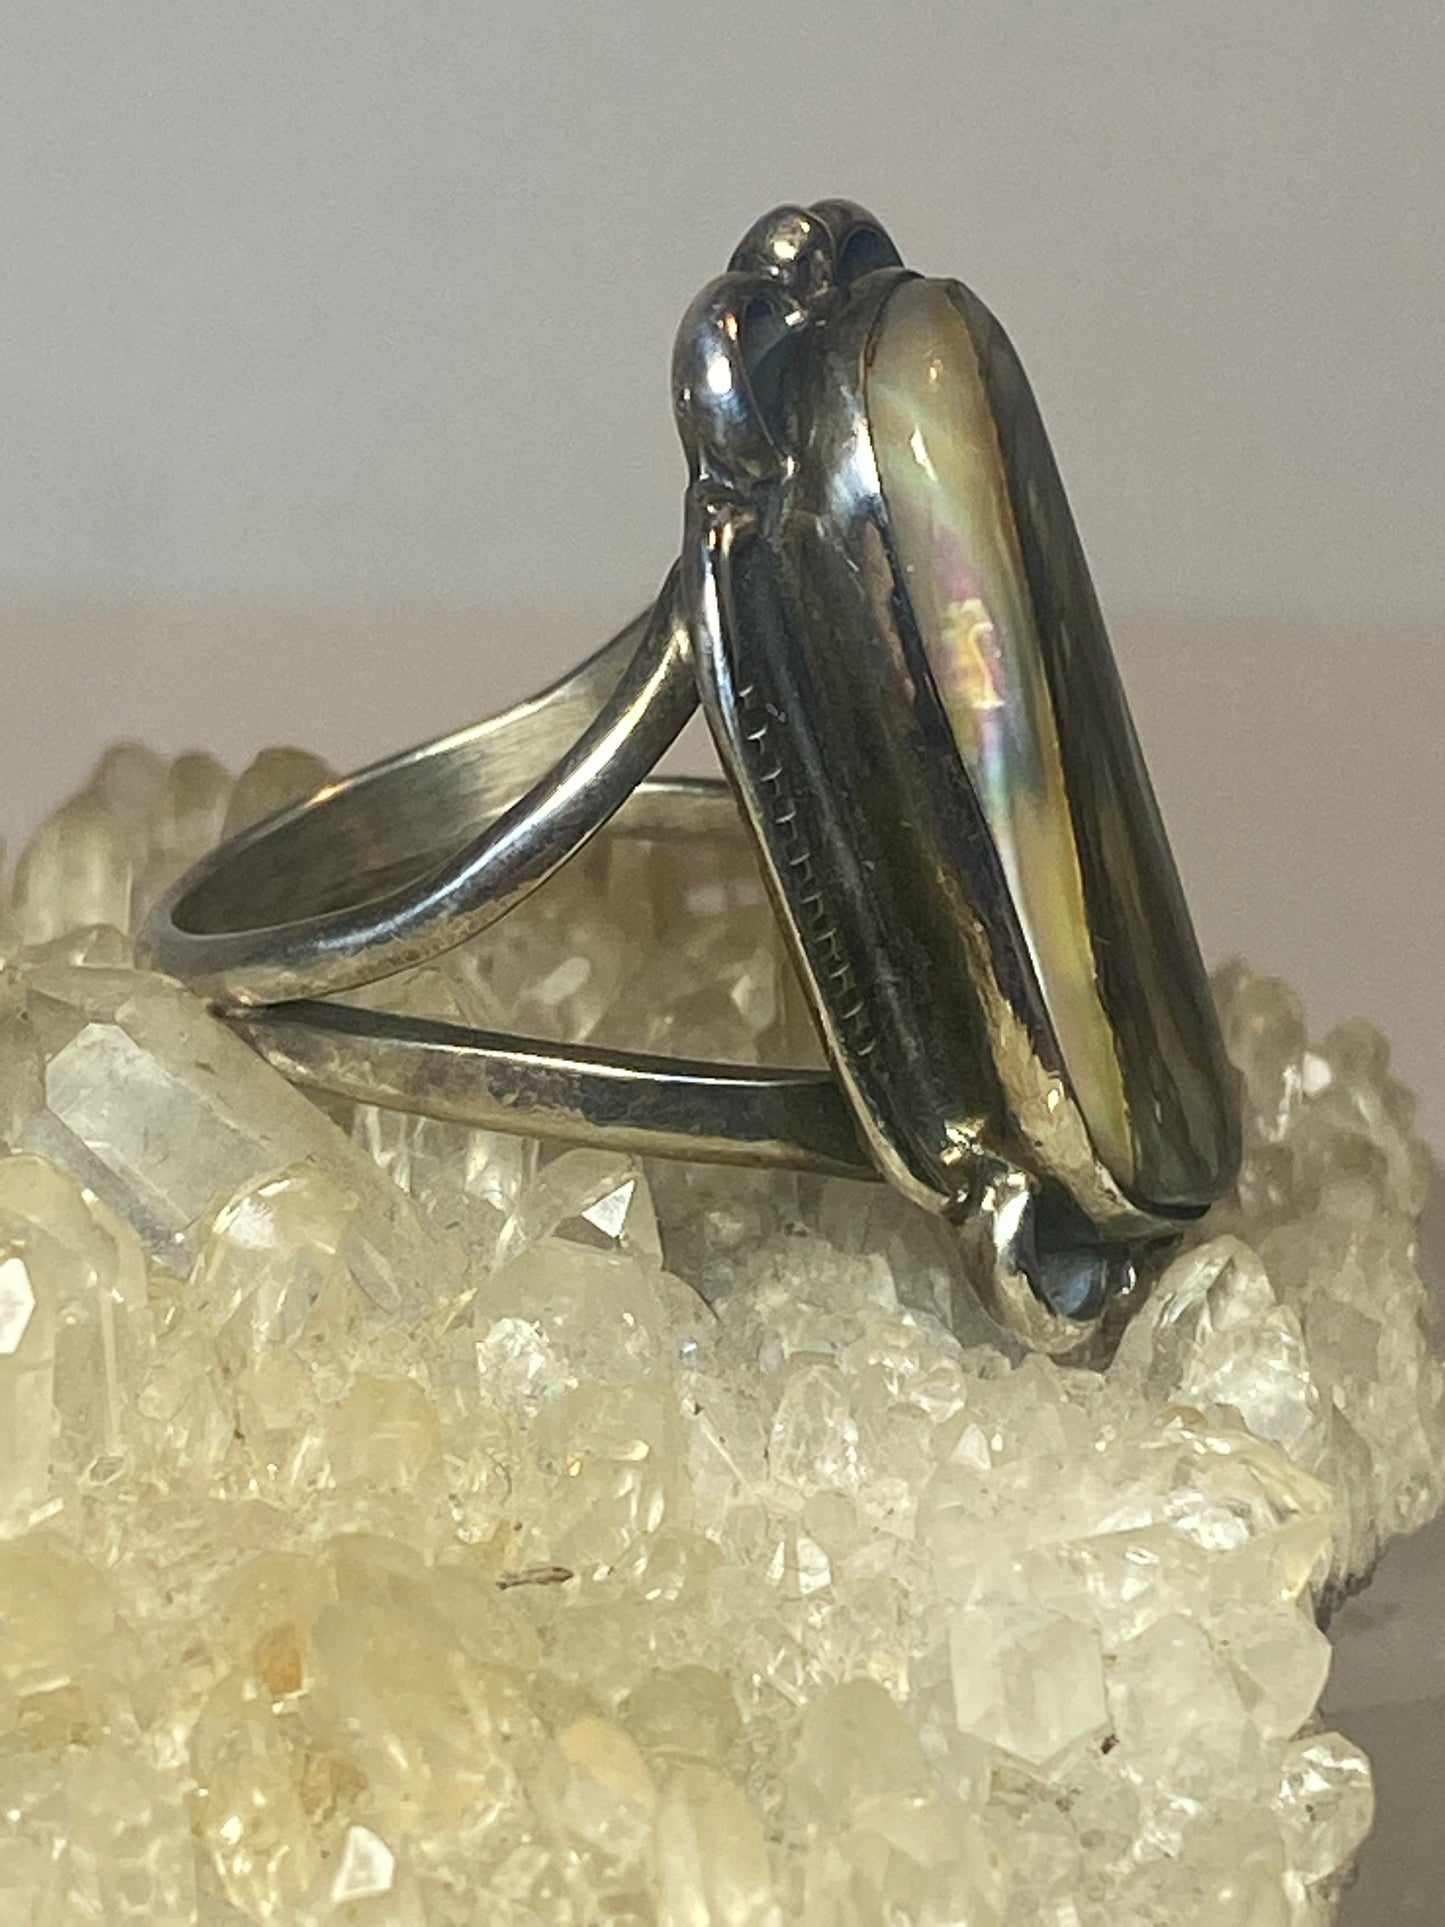 Long Abalone ring southwest sterling silver women girl